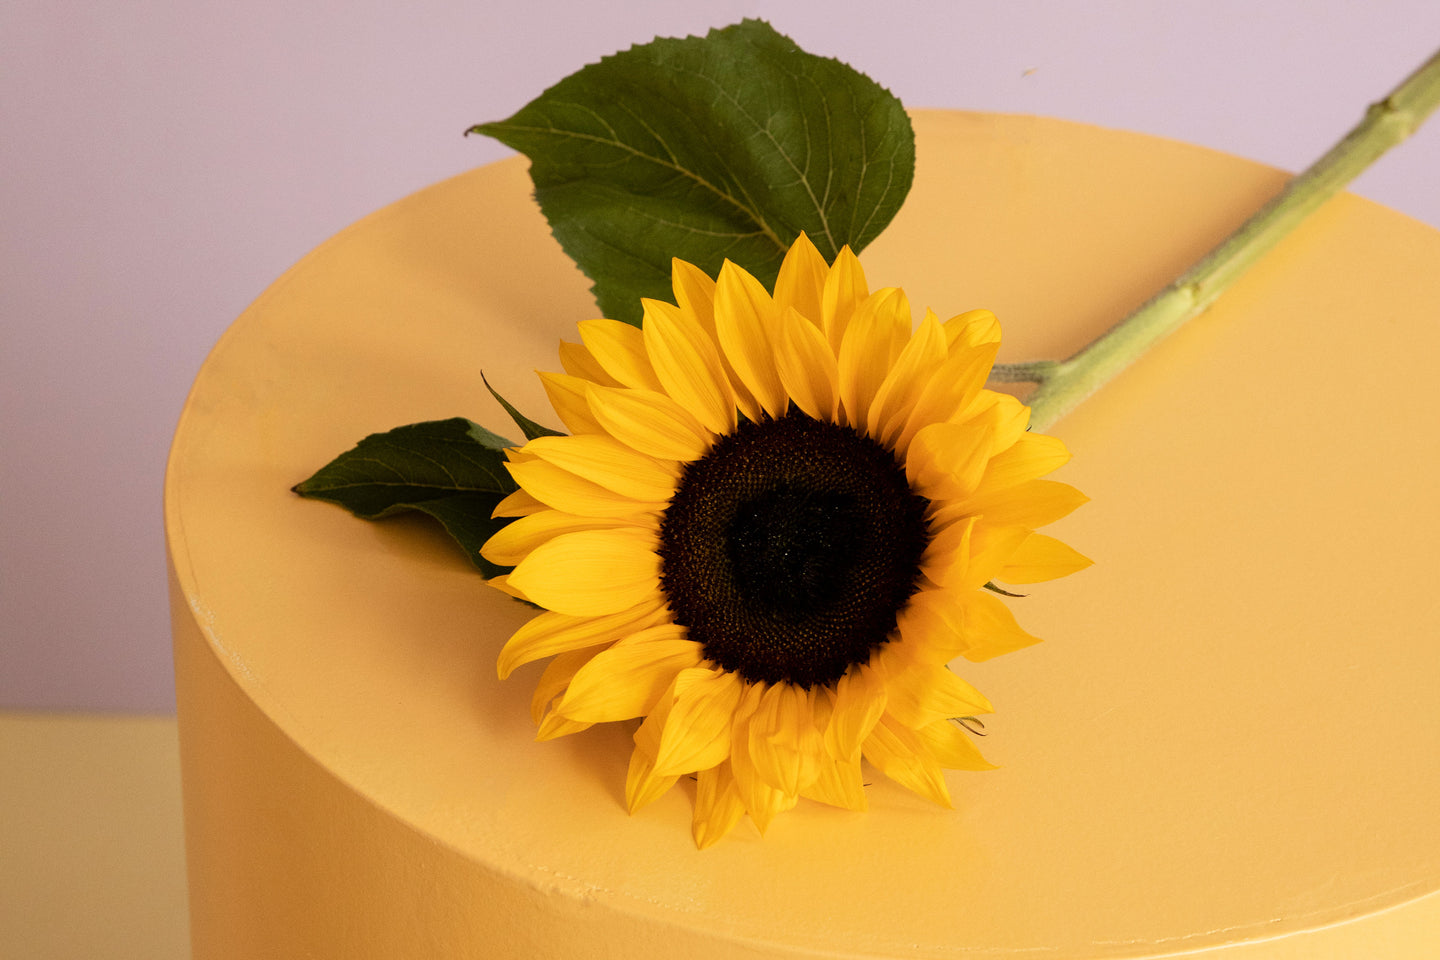 Erfahre mehr über die Sonnenblume: 3 Tipps